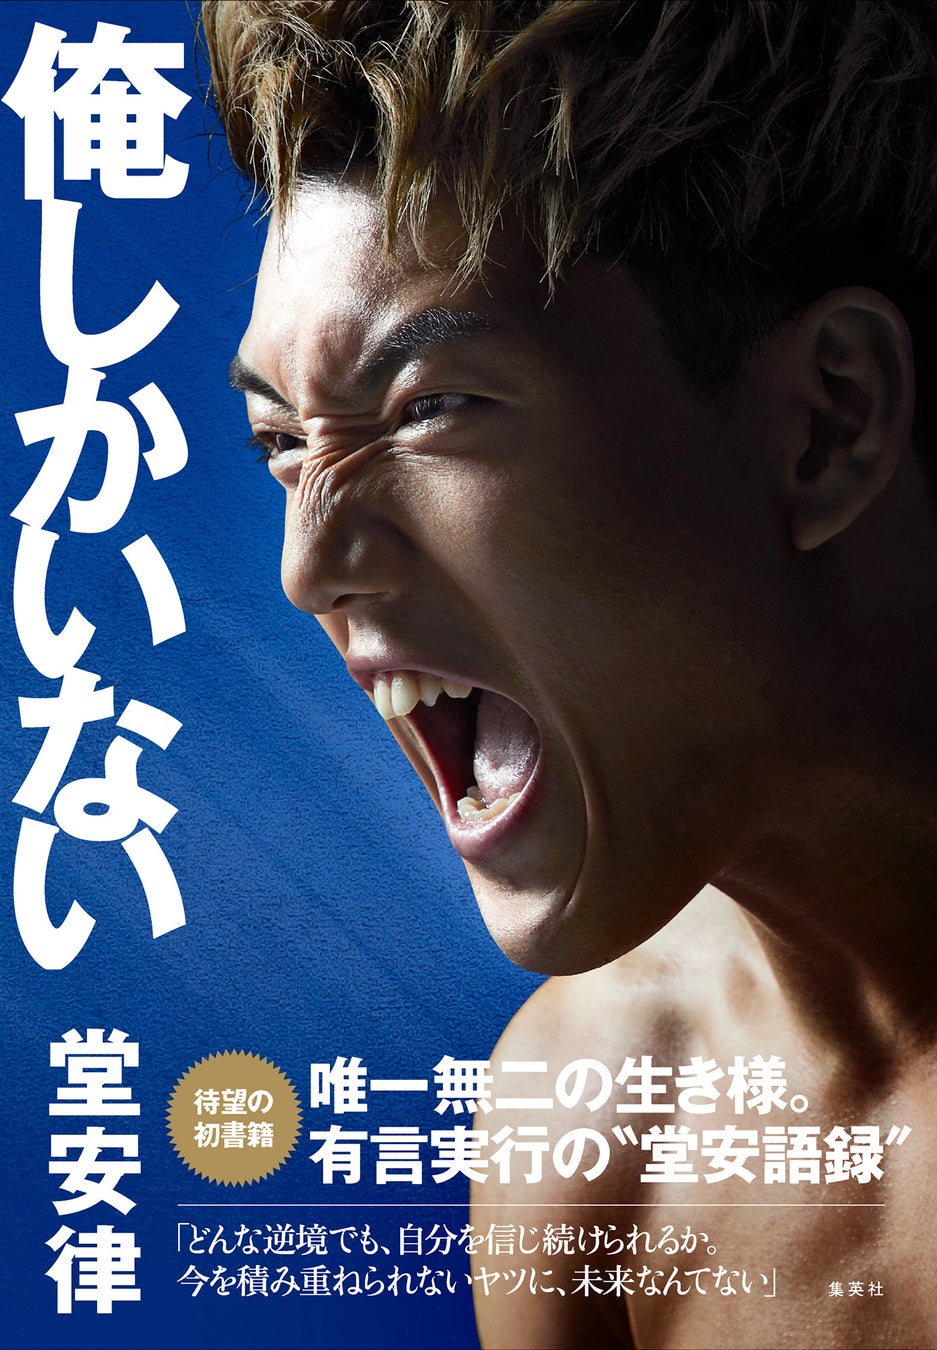 【発売前重版決定】サッカー日本代表・堂安律の初書籍『俺しかいない』が3月20日発売。　目次＆メッセージ大公開！  唯一無二の生き様。有言実行の“堂安語録”がここに。